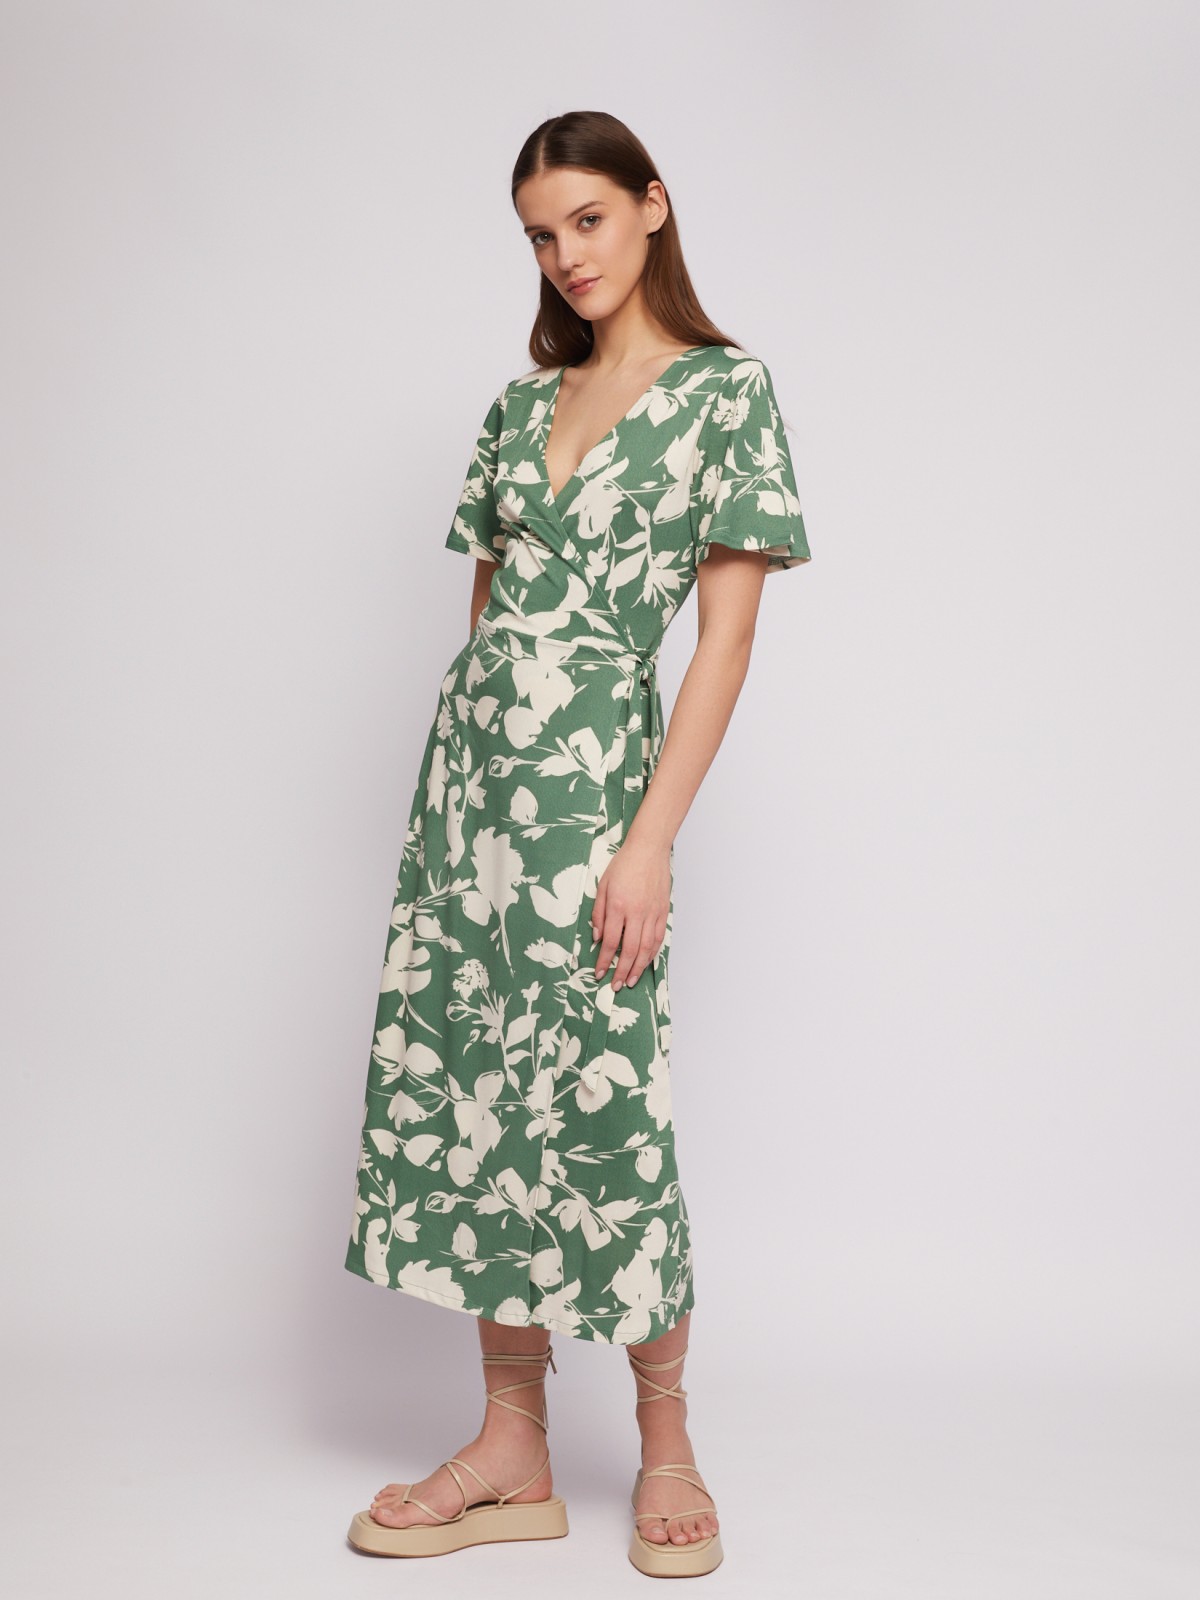 Приталенное платье-халат с запахом и растительным принтом zolla N24218159111, цвет зеленый, размер M - фото 2